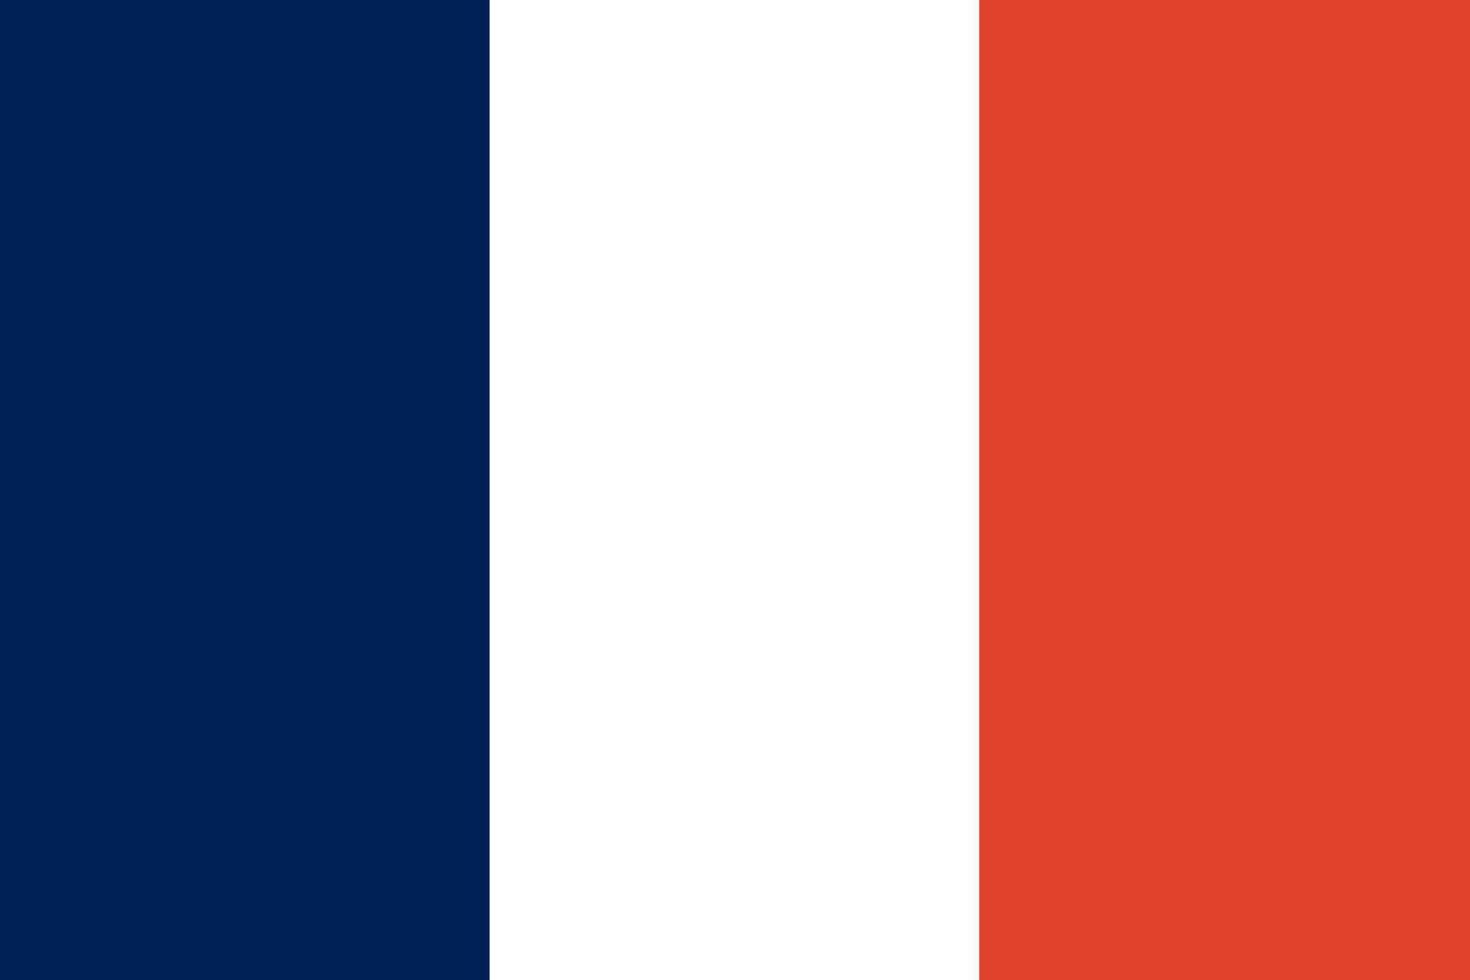 bandiera della francia. colori e proporzioni ufficiali. bandiera nazionale della francia. vettore